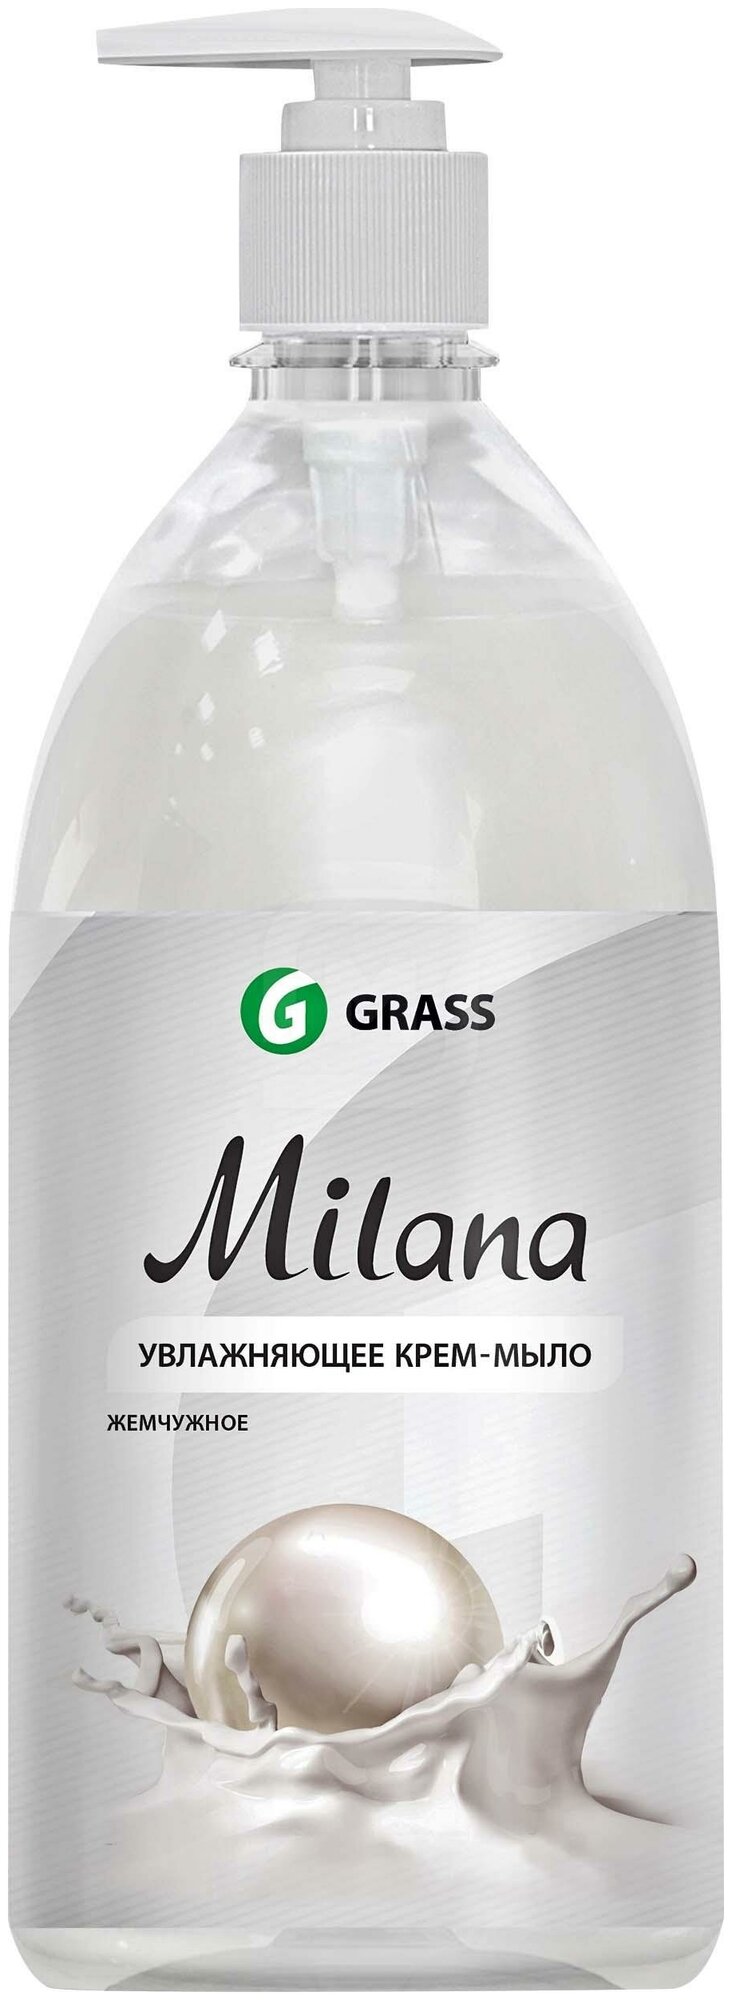 Жидкое крем-мыло Grass Milana Жемчужное 5 л флакон с дозатором, 926655